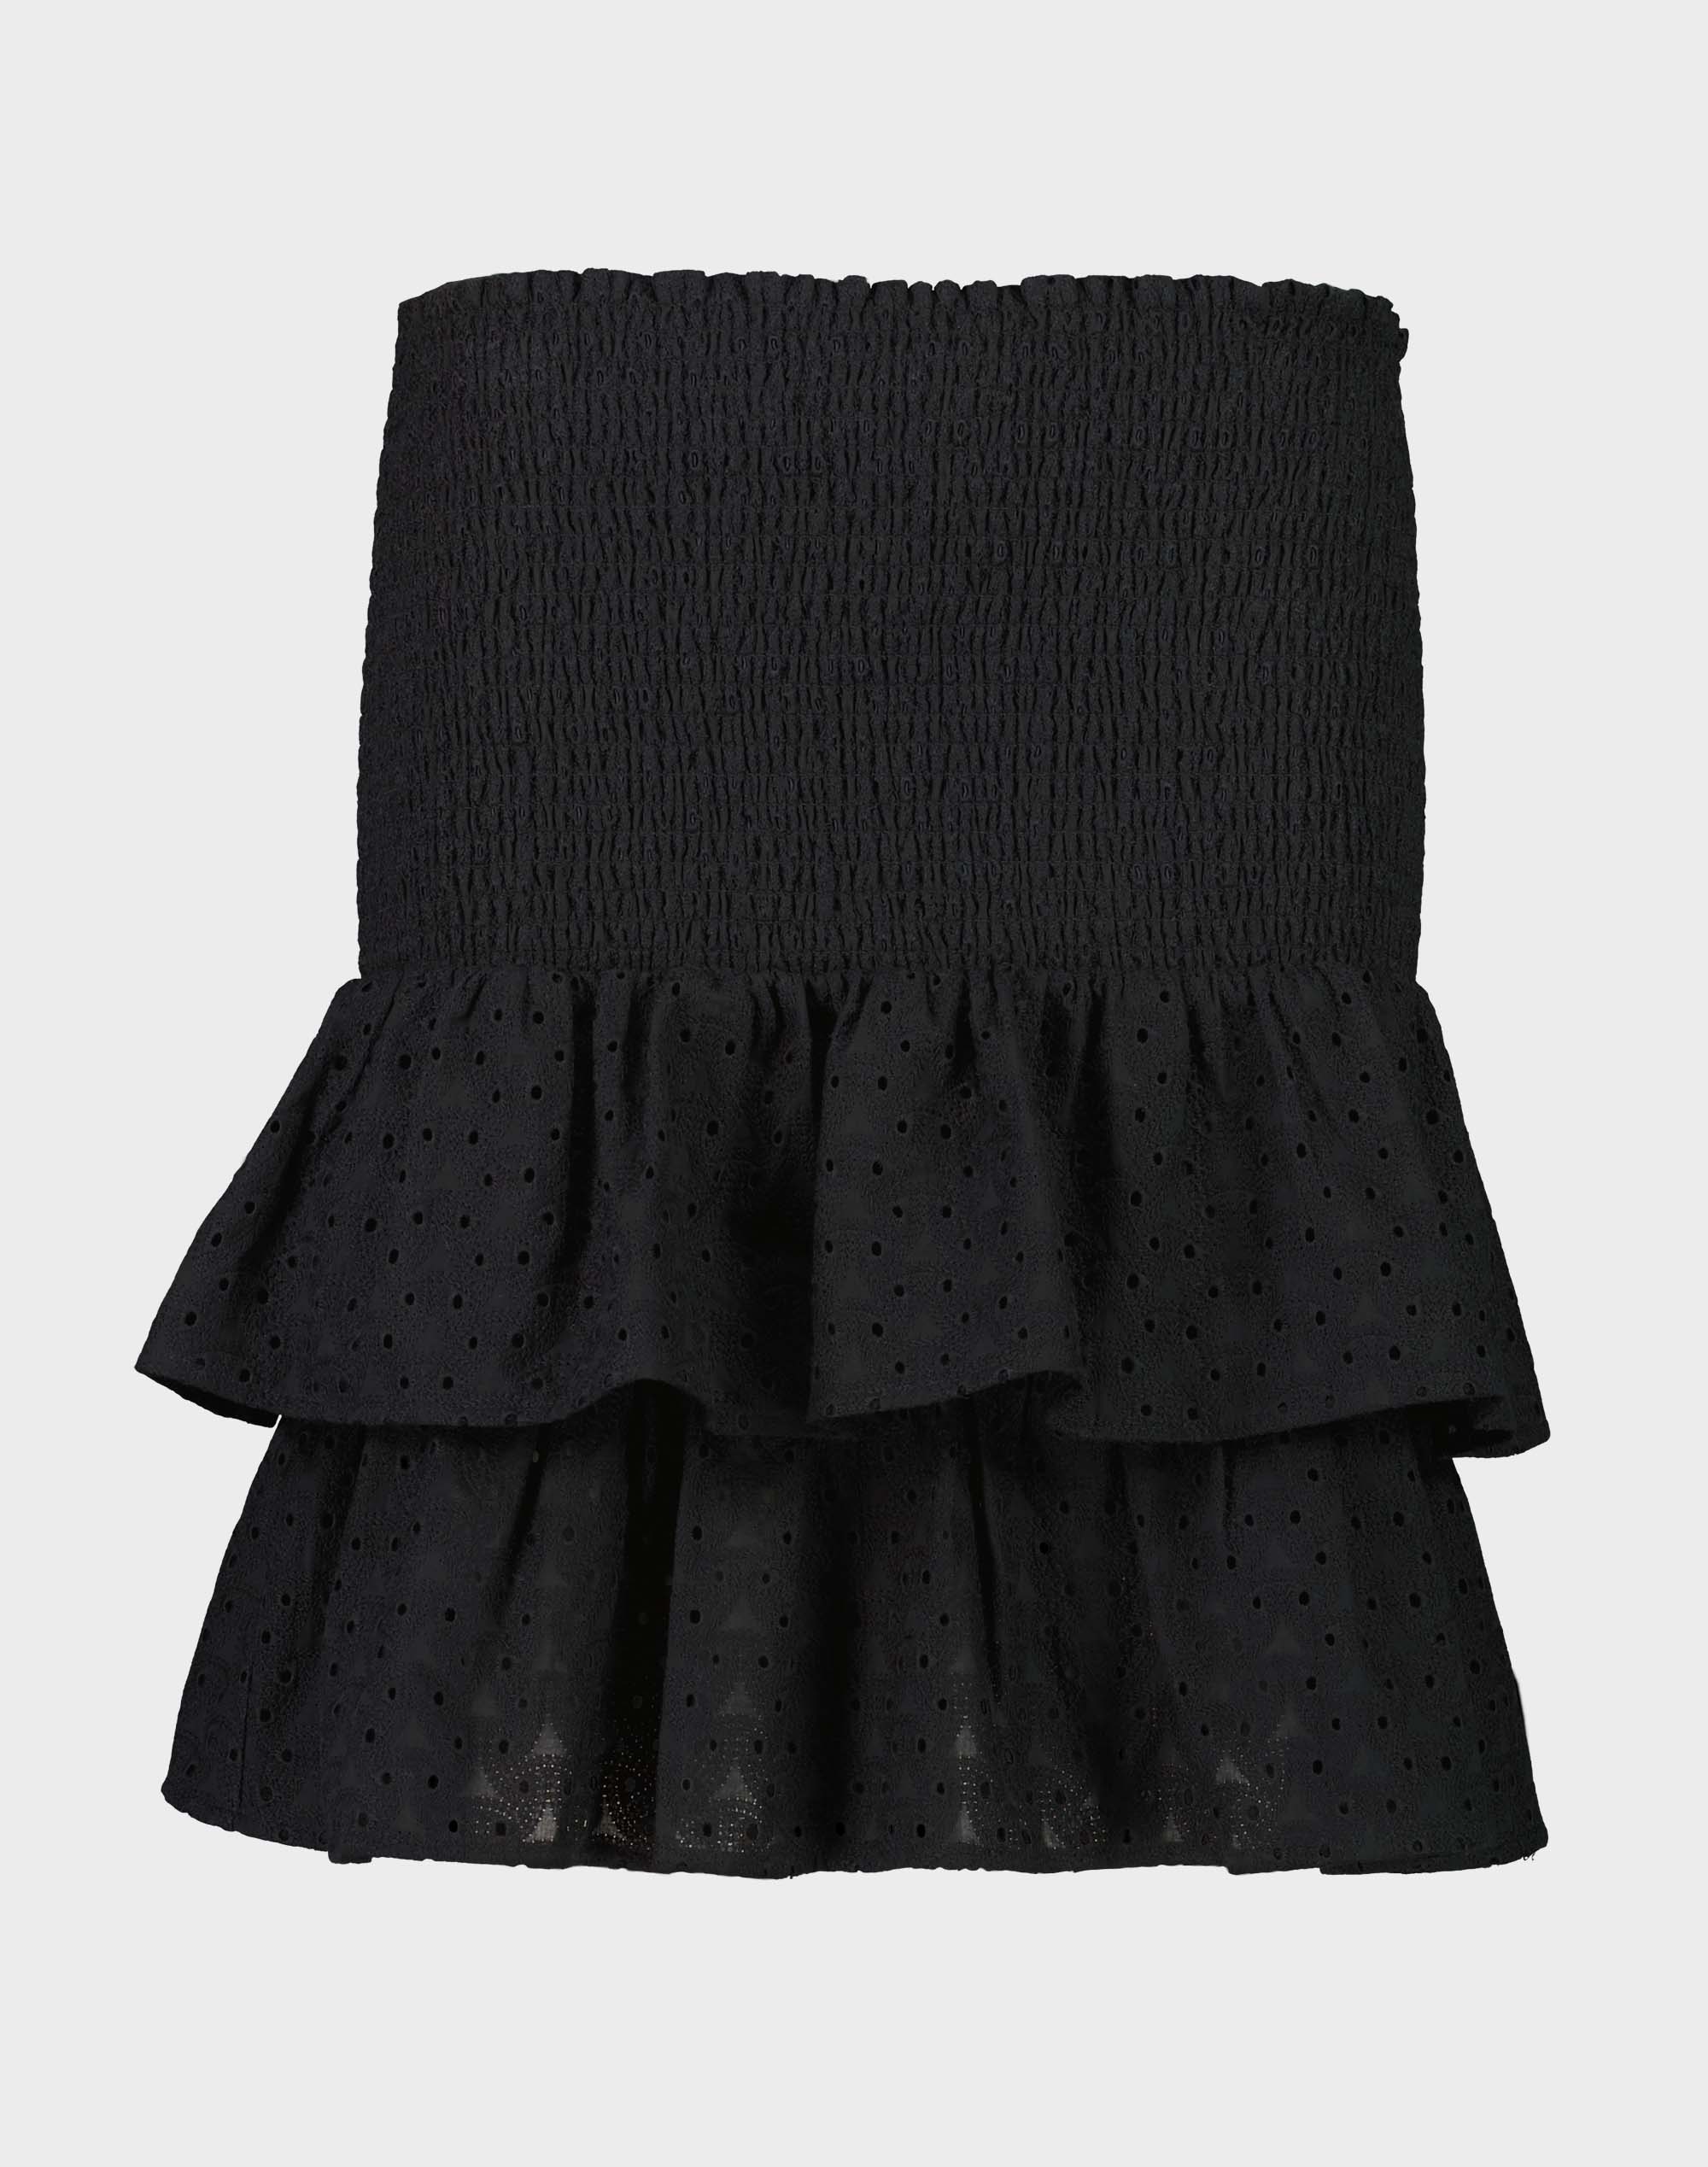 Broderie Shirred Skirt